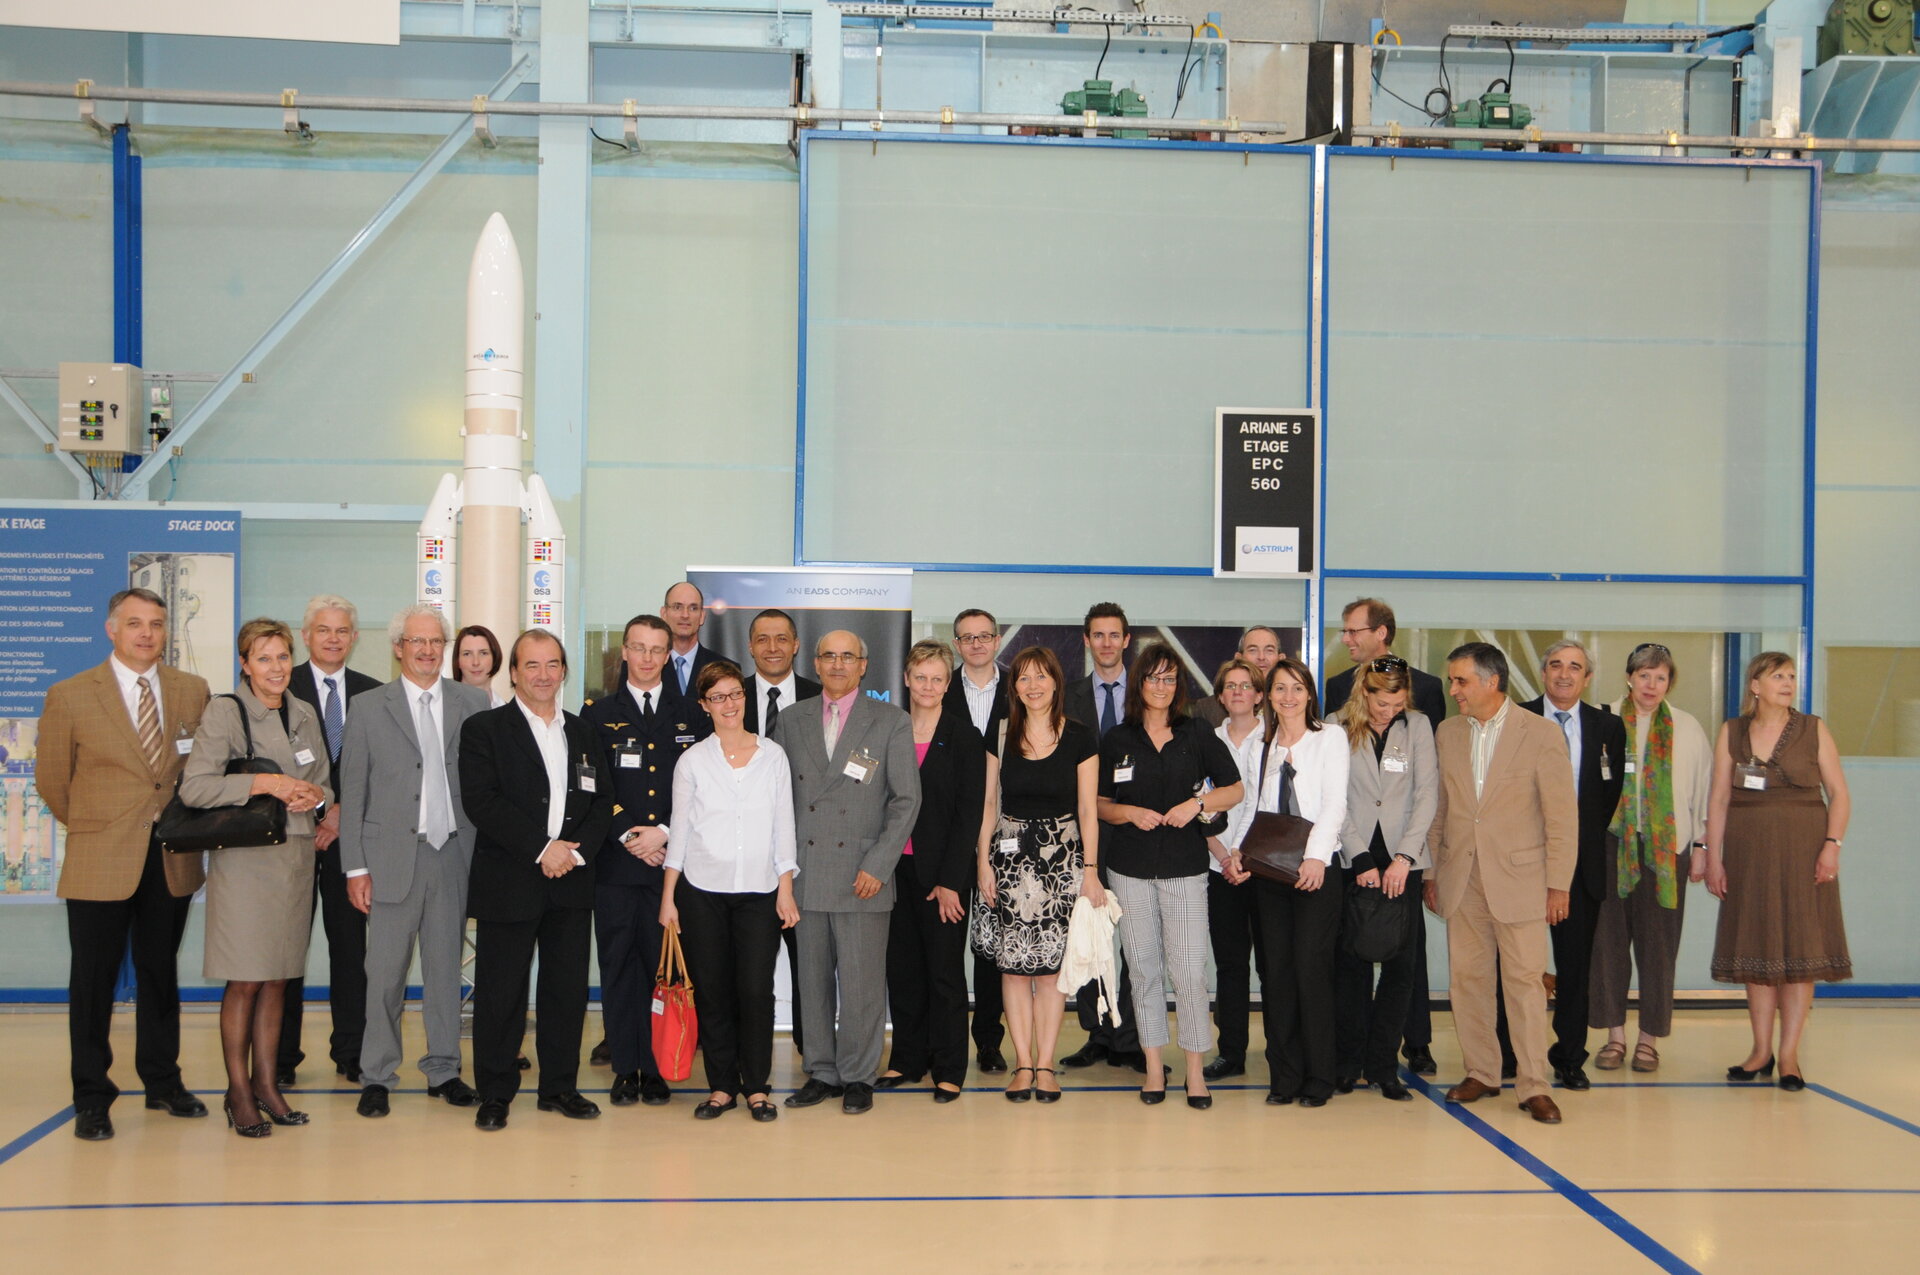 Teilnehmer der Sitzung des Rates der Bürgermeister der CVA bei der Besichtigung der Montagehalle der Ariane-5, Astrium Space Transportation, Les Mureaux.